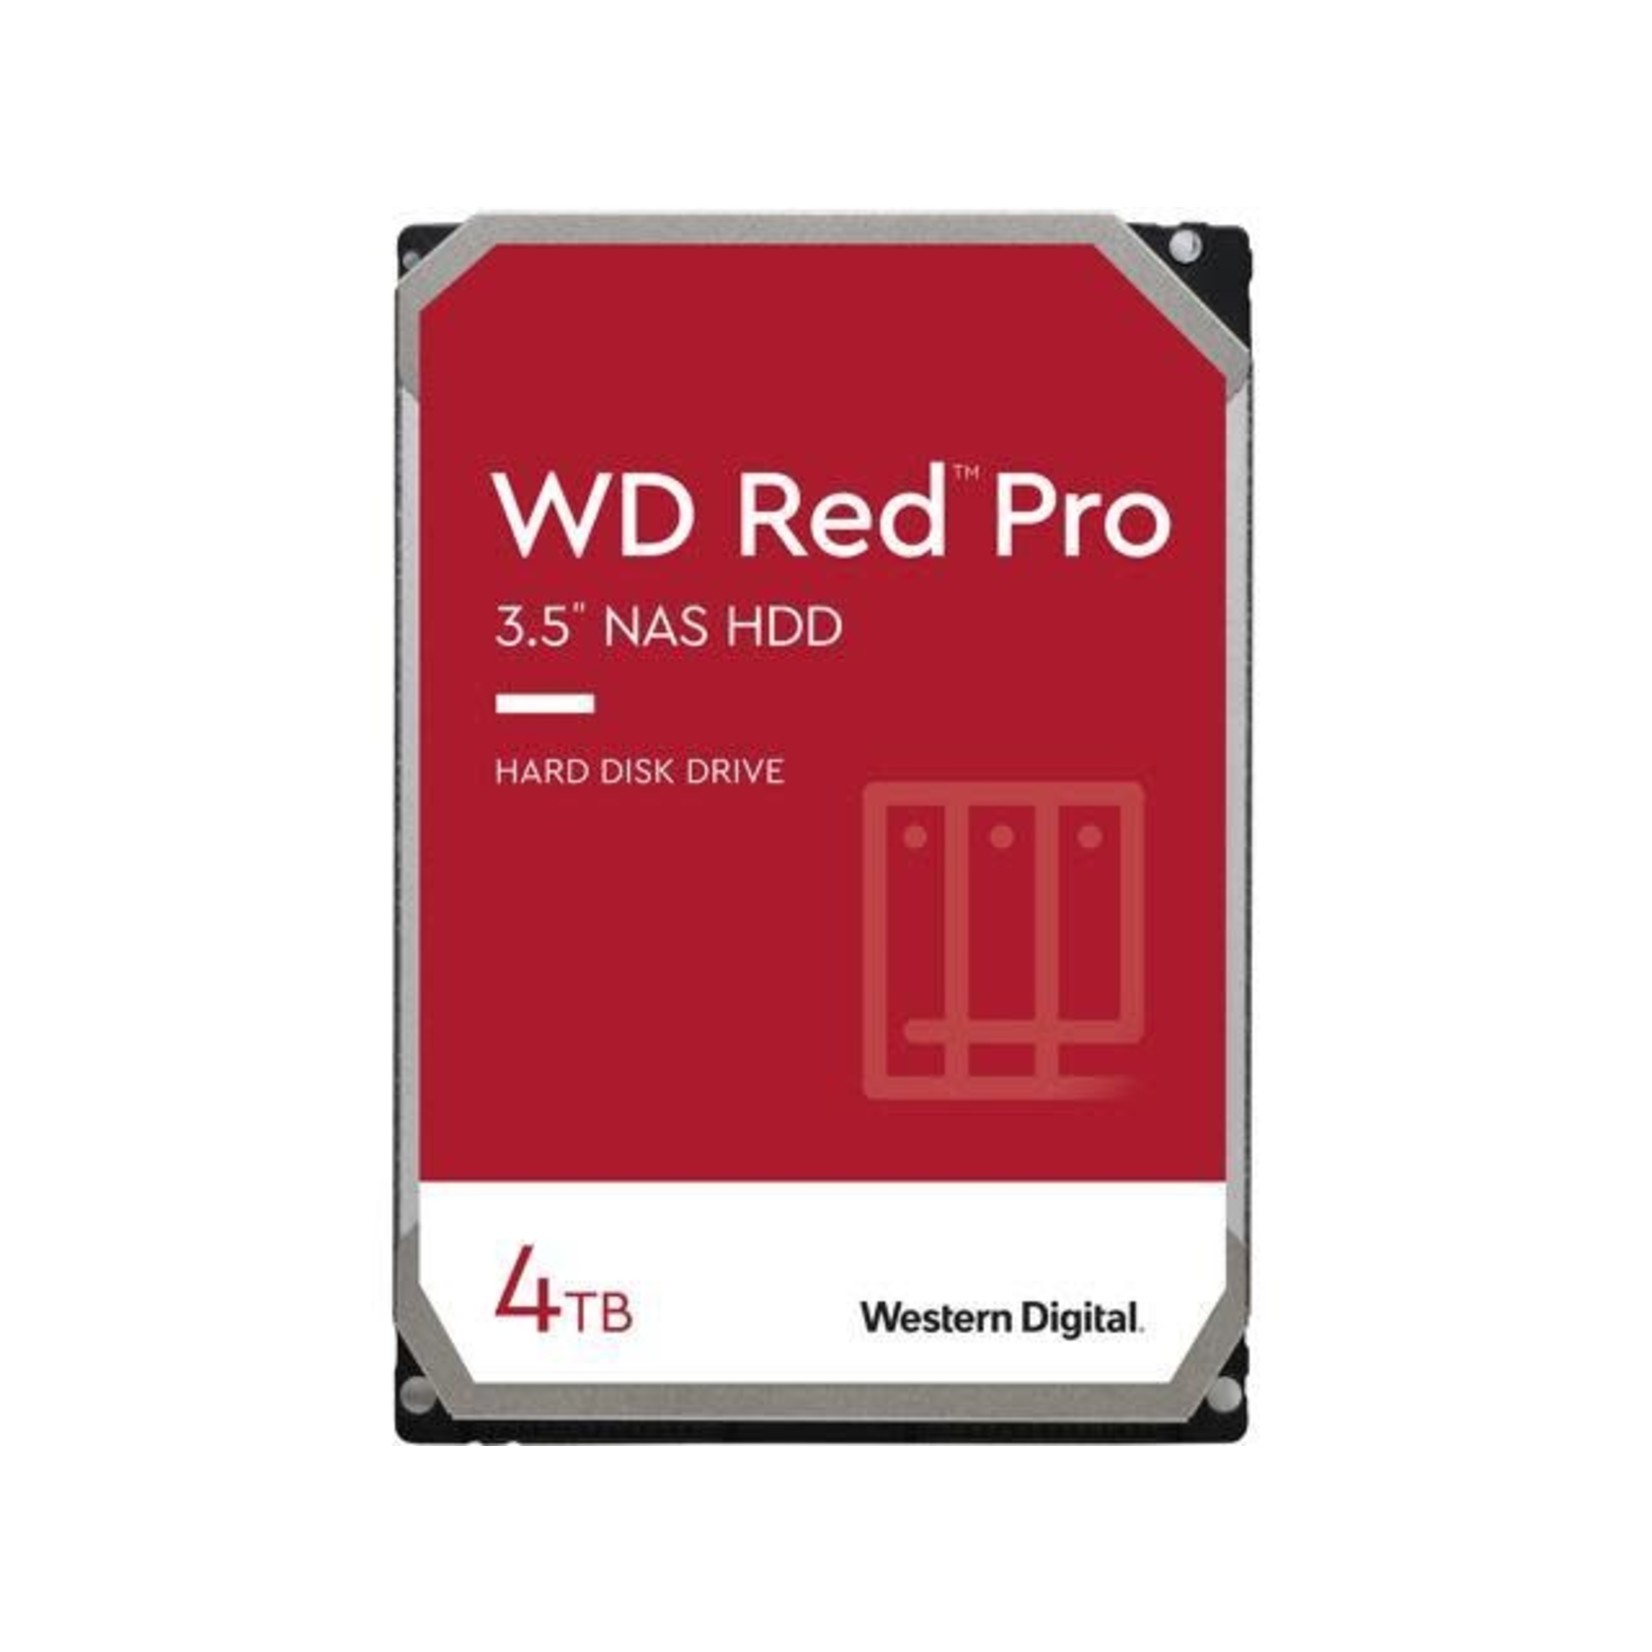 WD Red Pro WD4003FFBX 4TB 7200 RPM 256MB Cache SATA 6.0Gb/s 3.5" Internal Hard Drive Bare Drive